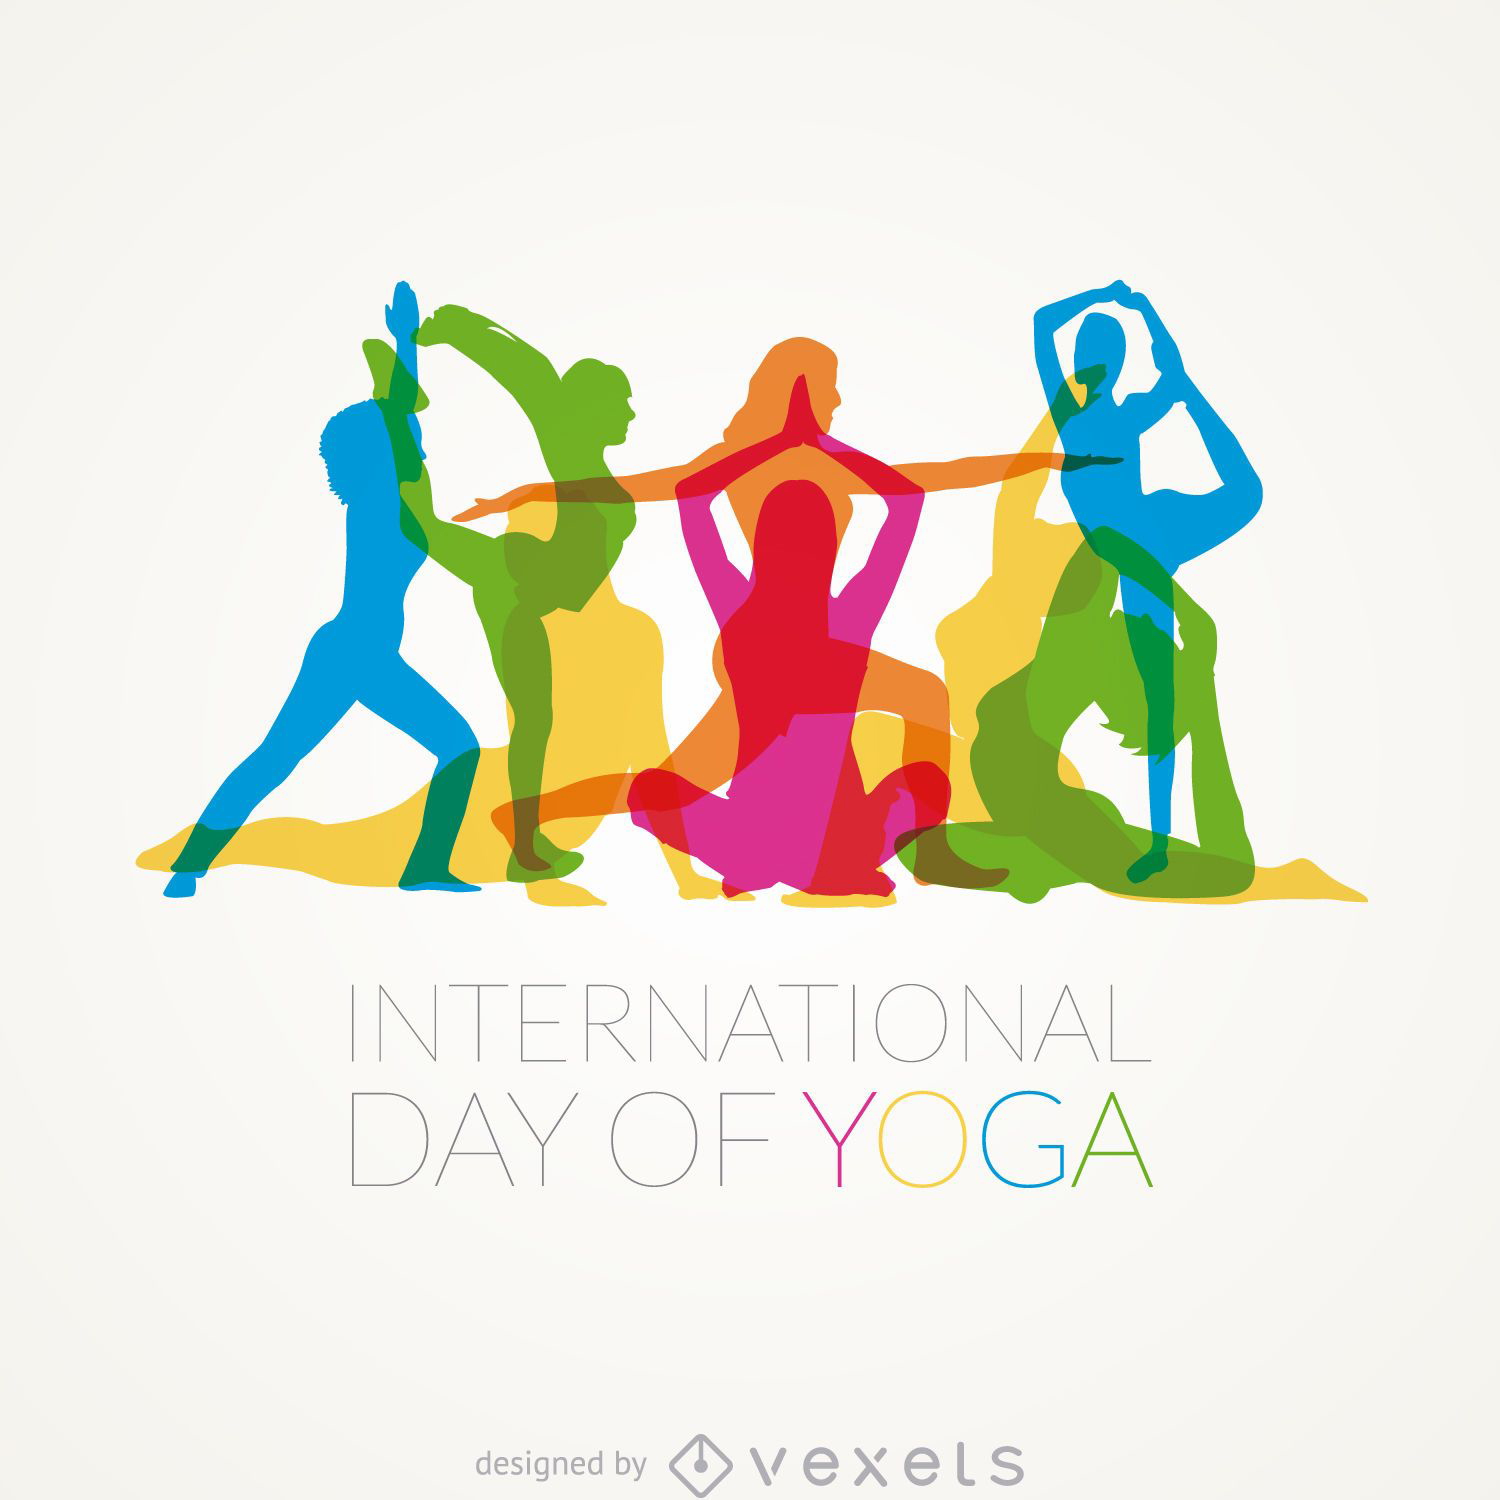 Posturas del Día Internacional de Yoga